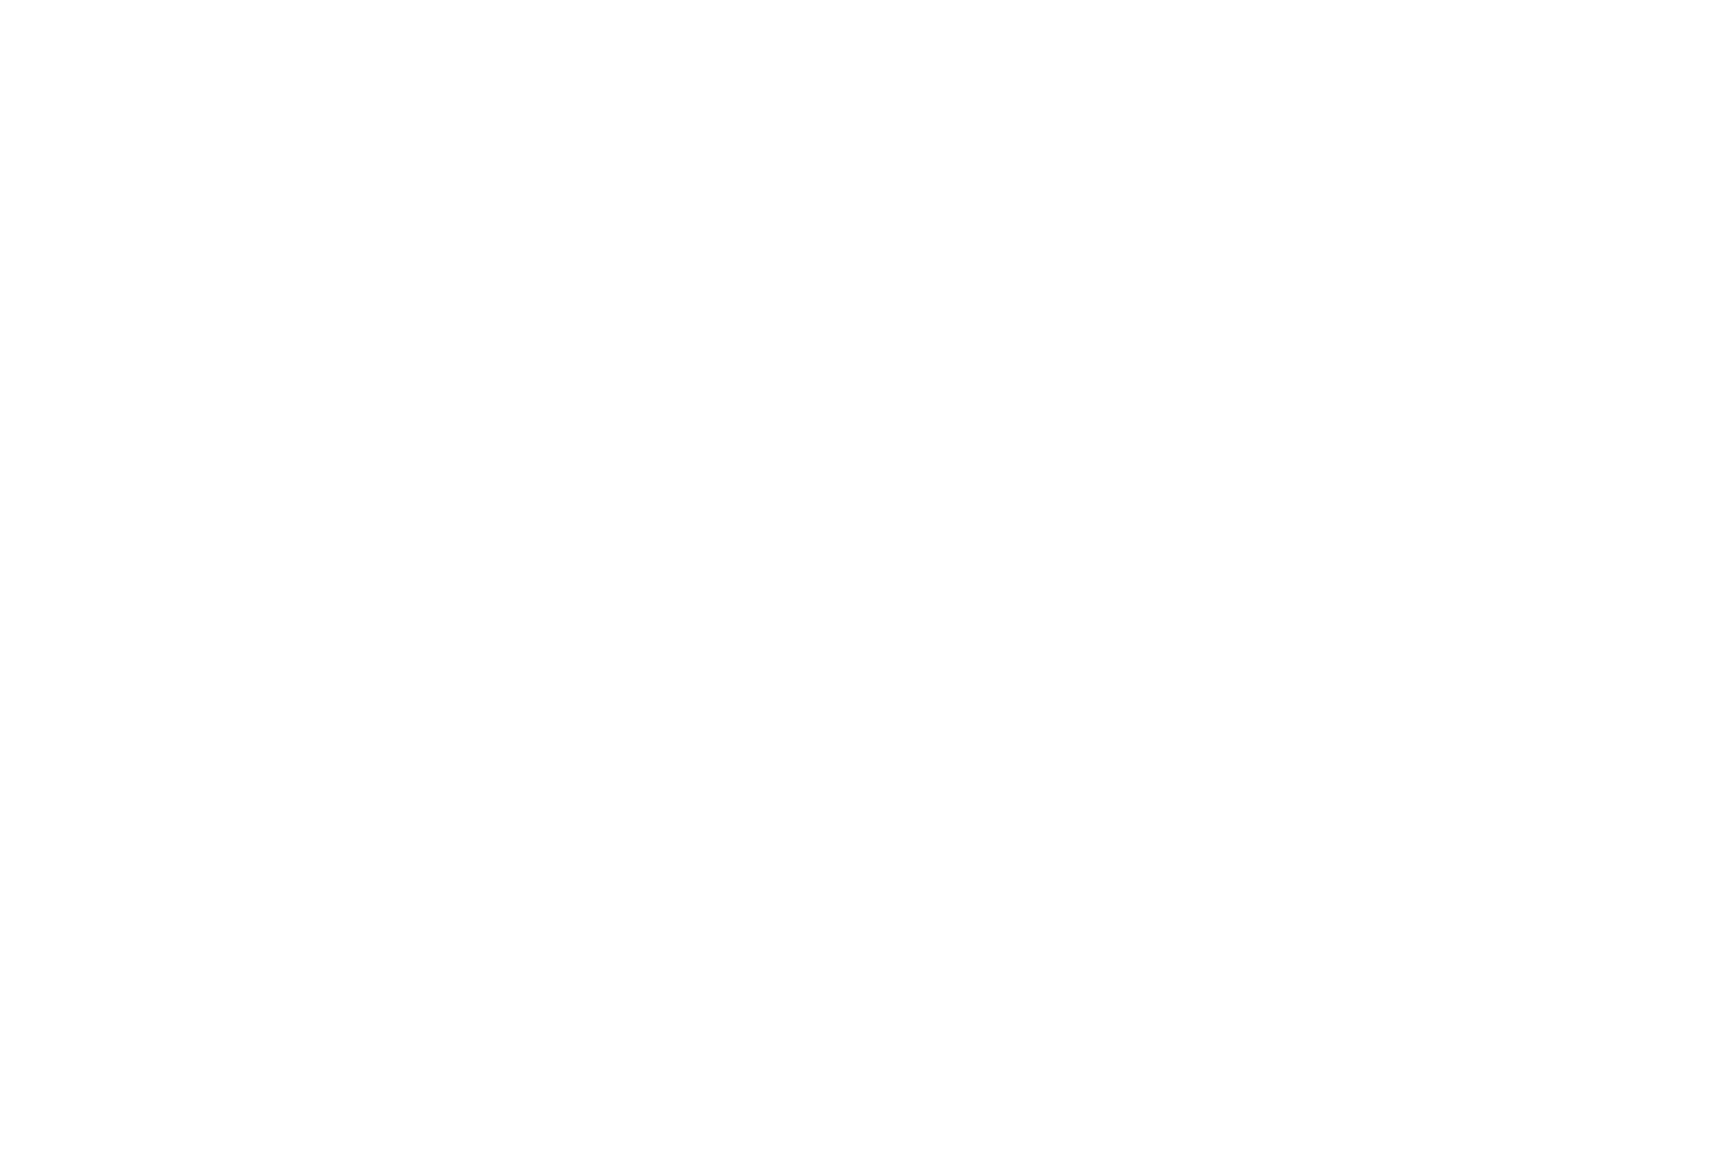 BEST ORIGINAL MUSIC - Best Istanbul Film Festival - 2020